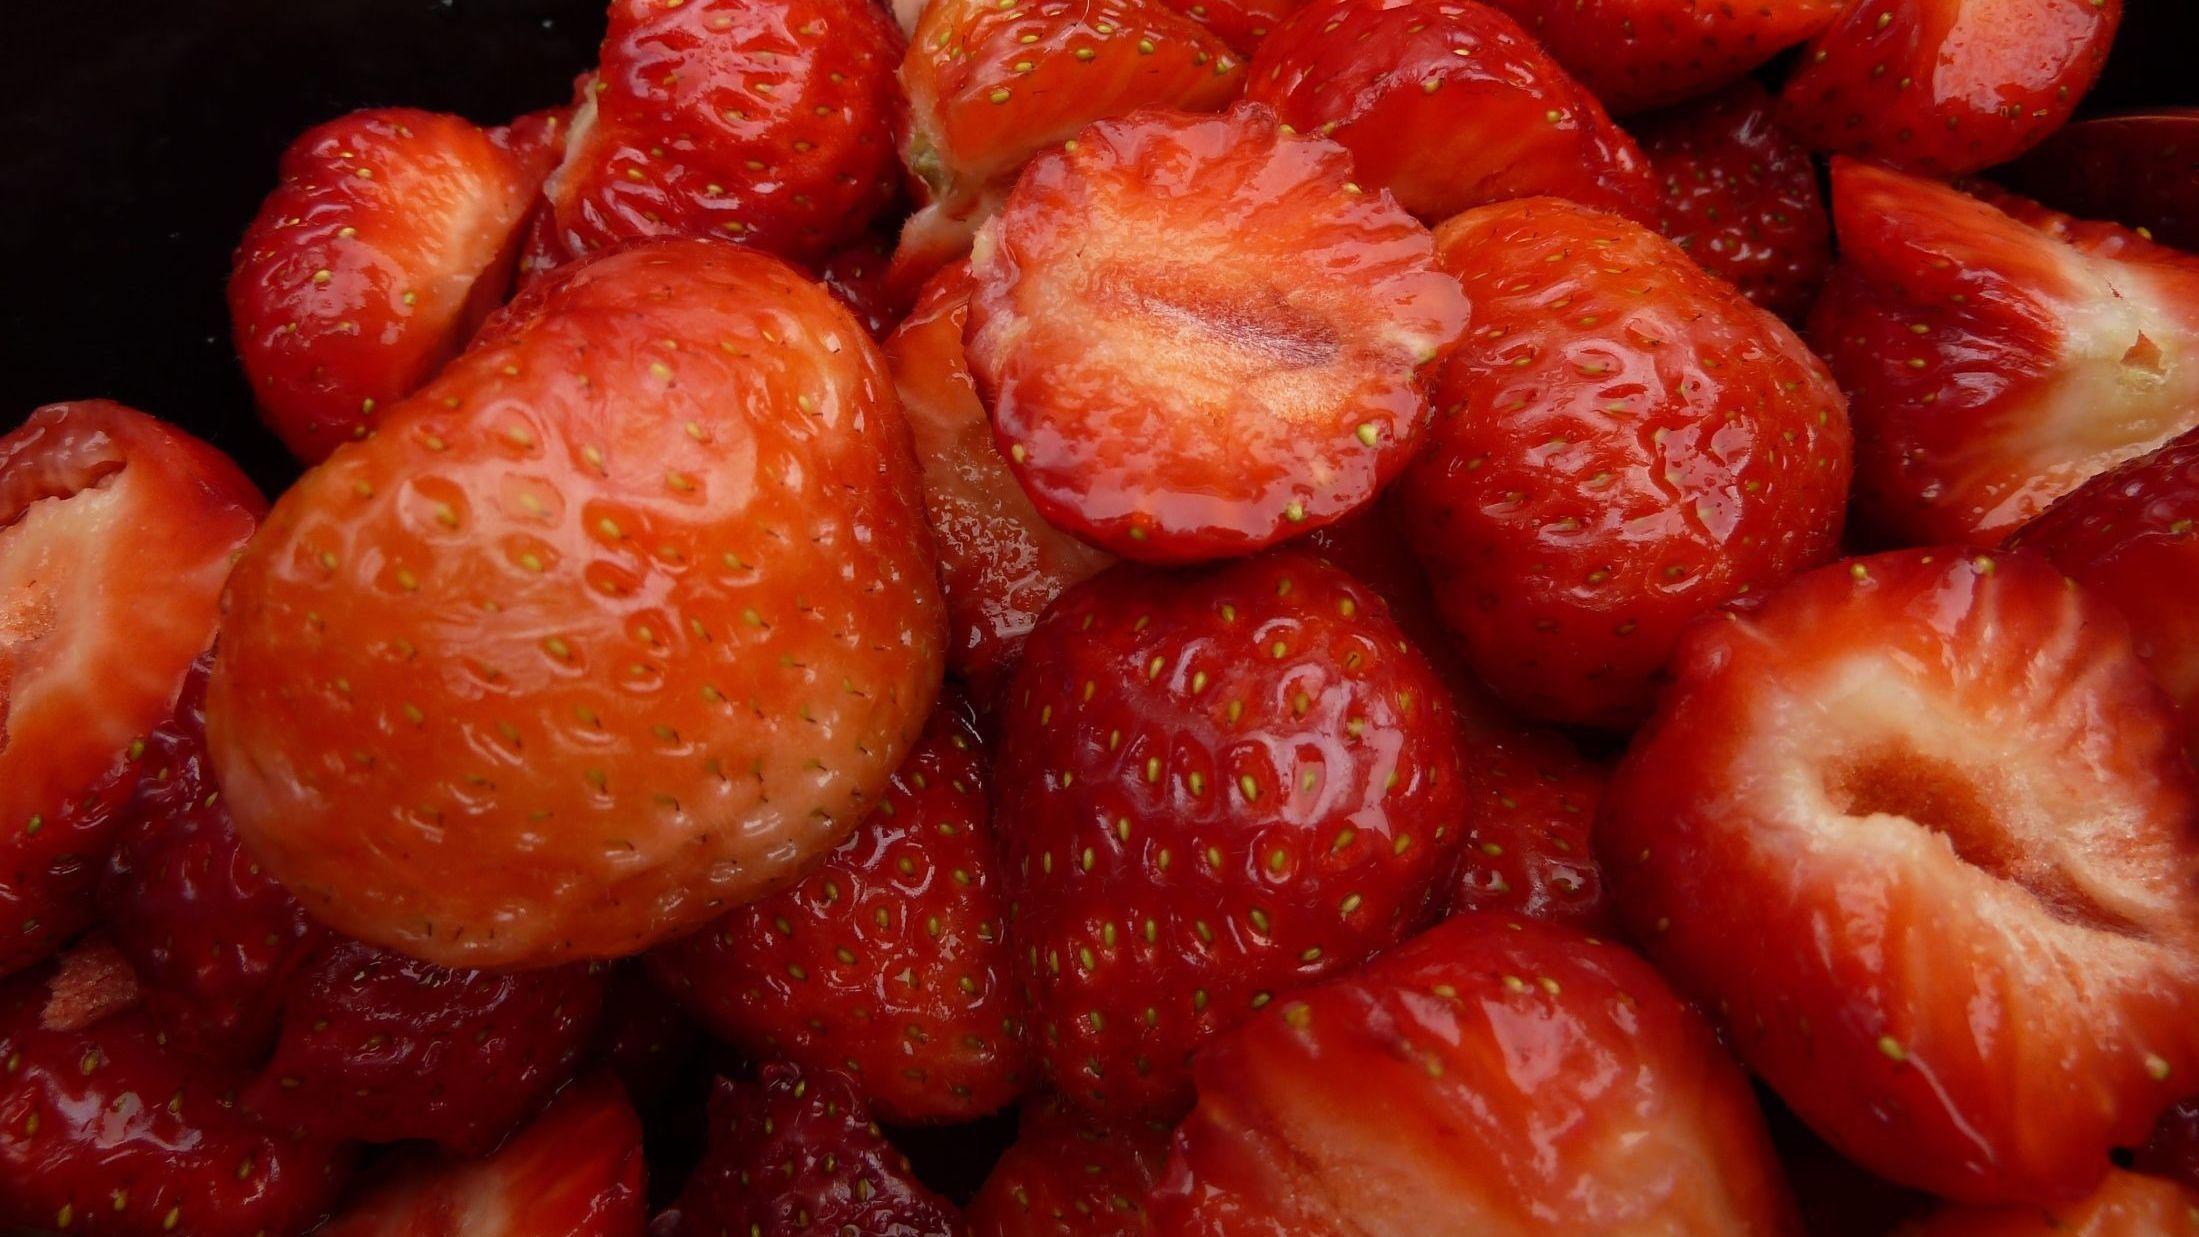 NÅ KOMMER JORDBÆRNE: Sommeren er ikke det samme uten smaksrike jordbær. I Norge startet jordbærsesongen normalt 10.–15. juni i Follo. Men i år er sesongen minst to uker forsinket. Foto: Jan Ovind